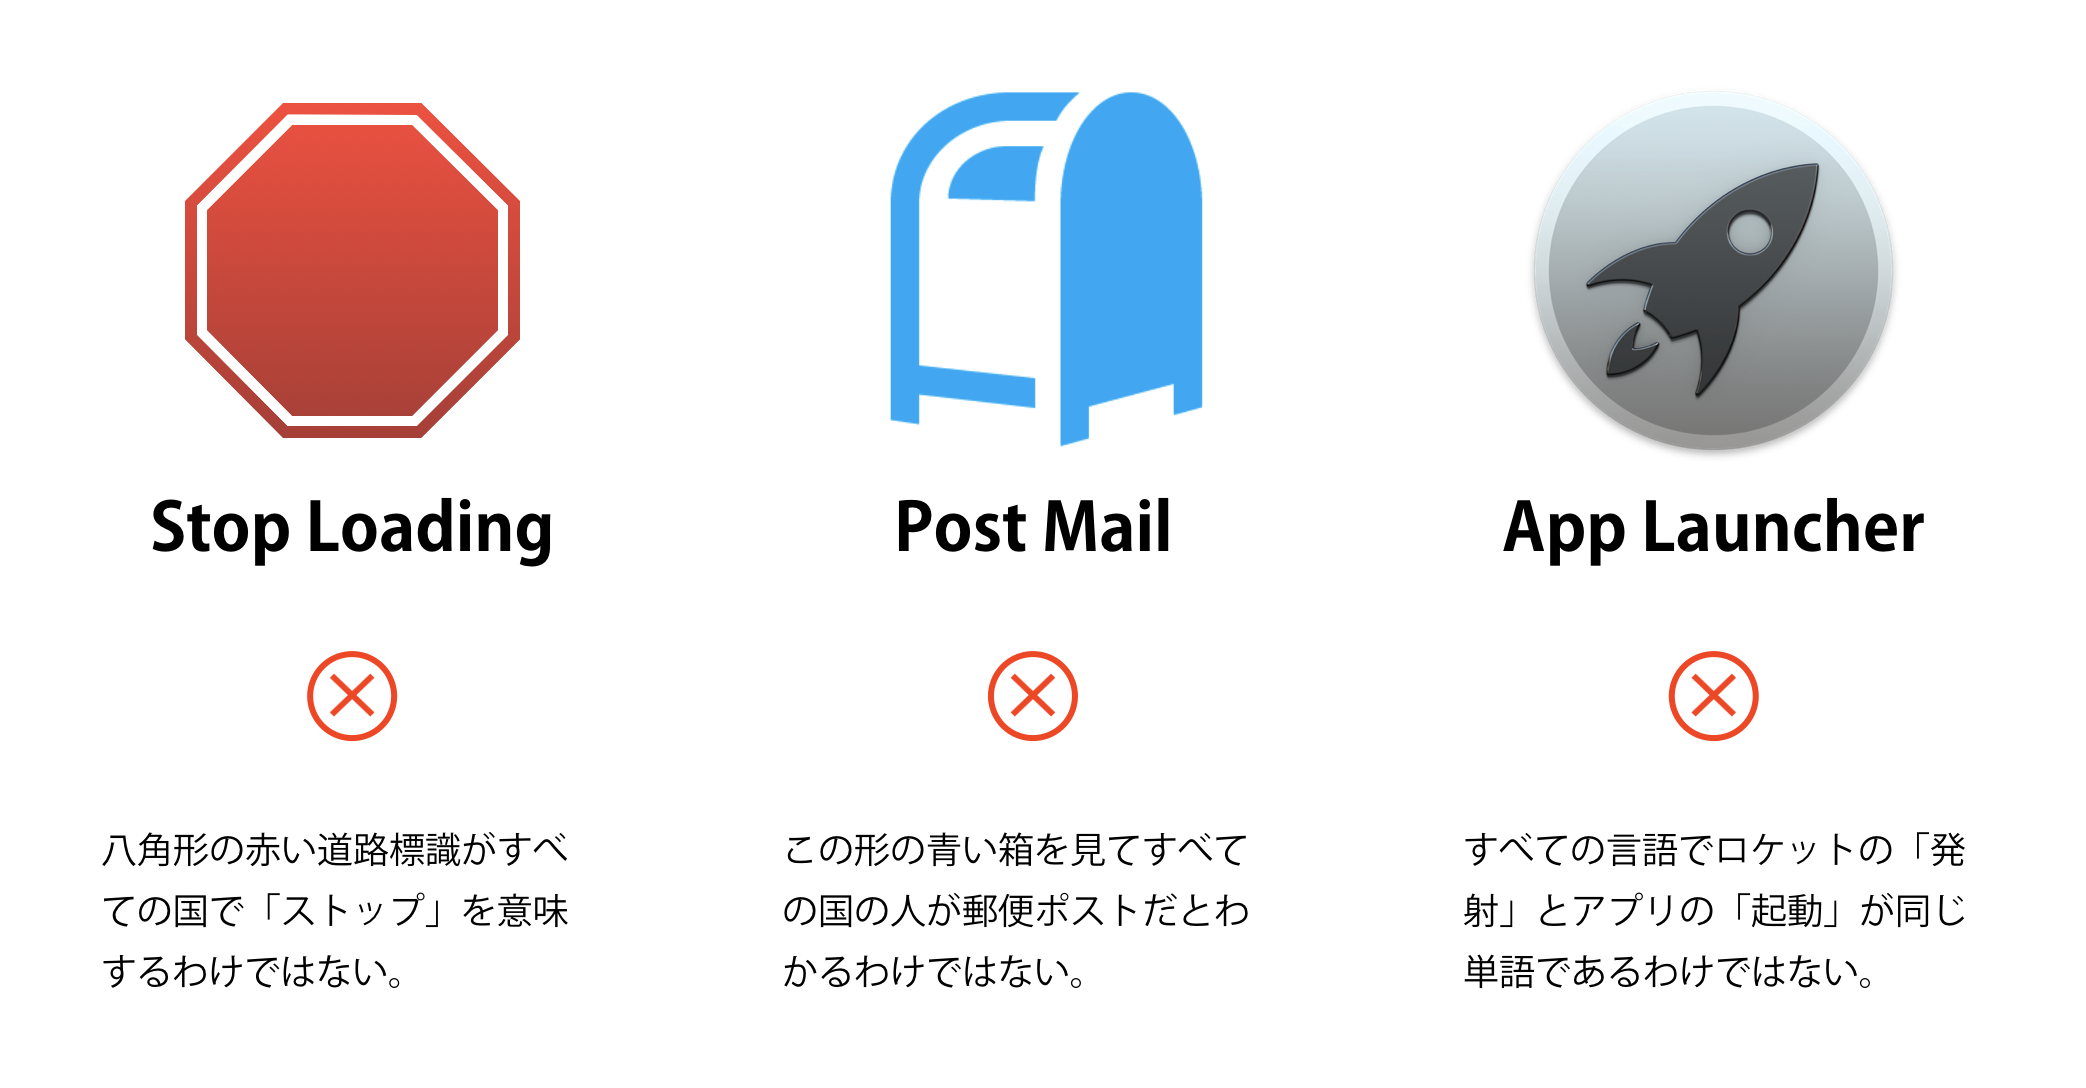 Stop Loading: 八角形の赤い道路標識がすべての国で「ストップ」を意味するわけではない。Post Mail: 青い箱を見てすべての国の人が郵便ポストだとわかるわけではない。App Launcher: すべての言語でロケットの「発射」とアプリの「起動」が同じ単語であるわけではない。